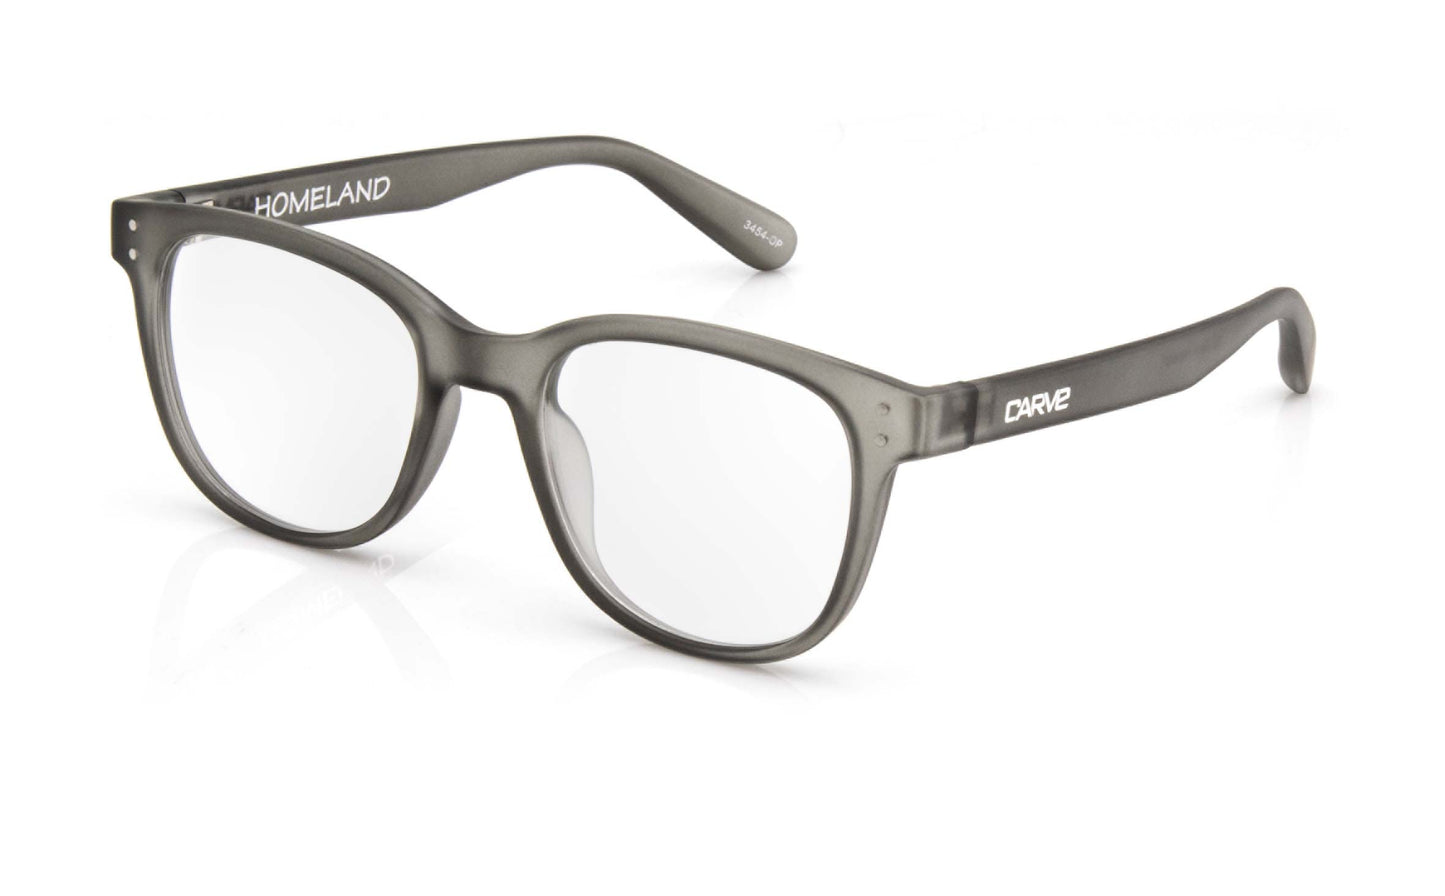 Homeland - Reading Gray Translucent Frame Glasses